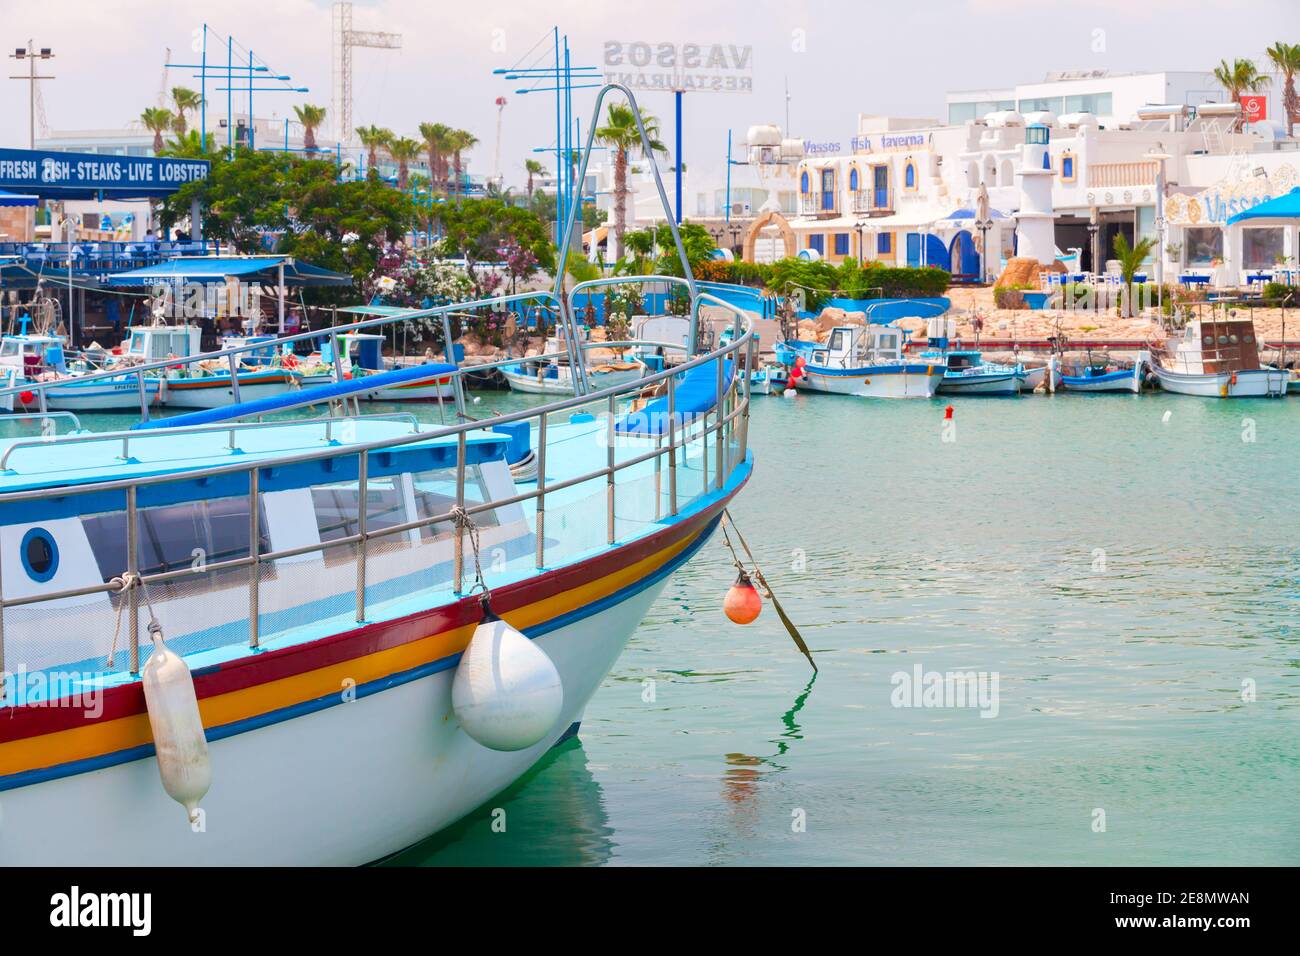 Ayia Napa, Cyprus - June 12, 2018: Agia Napa marina view, boats are moored near fish restaurant Stock Photo